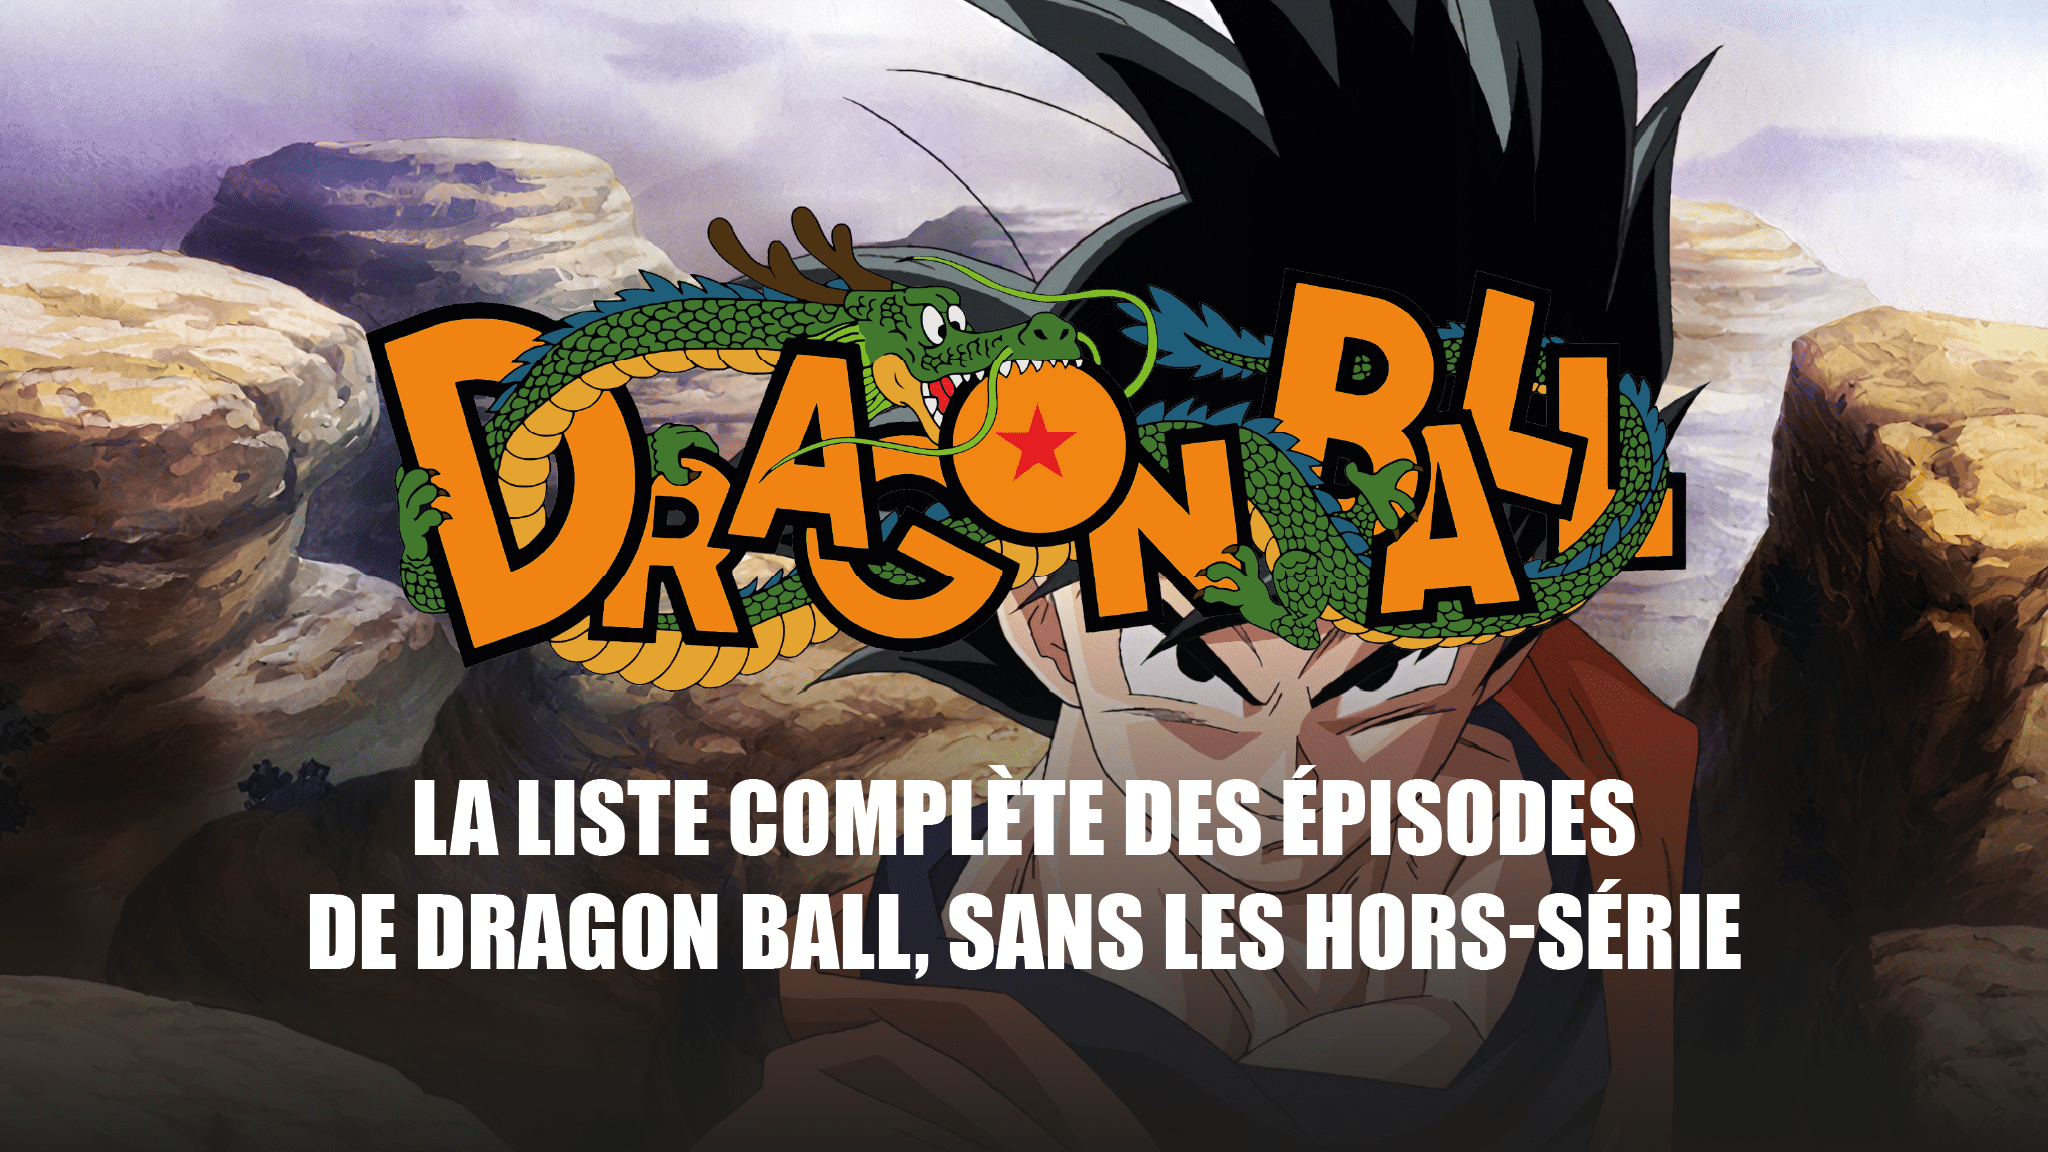 La liste complète des épisodes des animes Dragon Ball, Dragon Ball Z, Dragon Ball GT et Dragon Ball Super